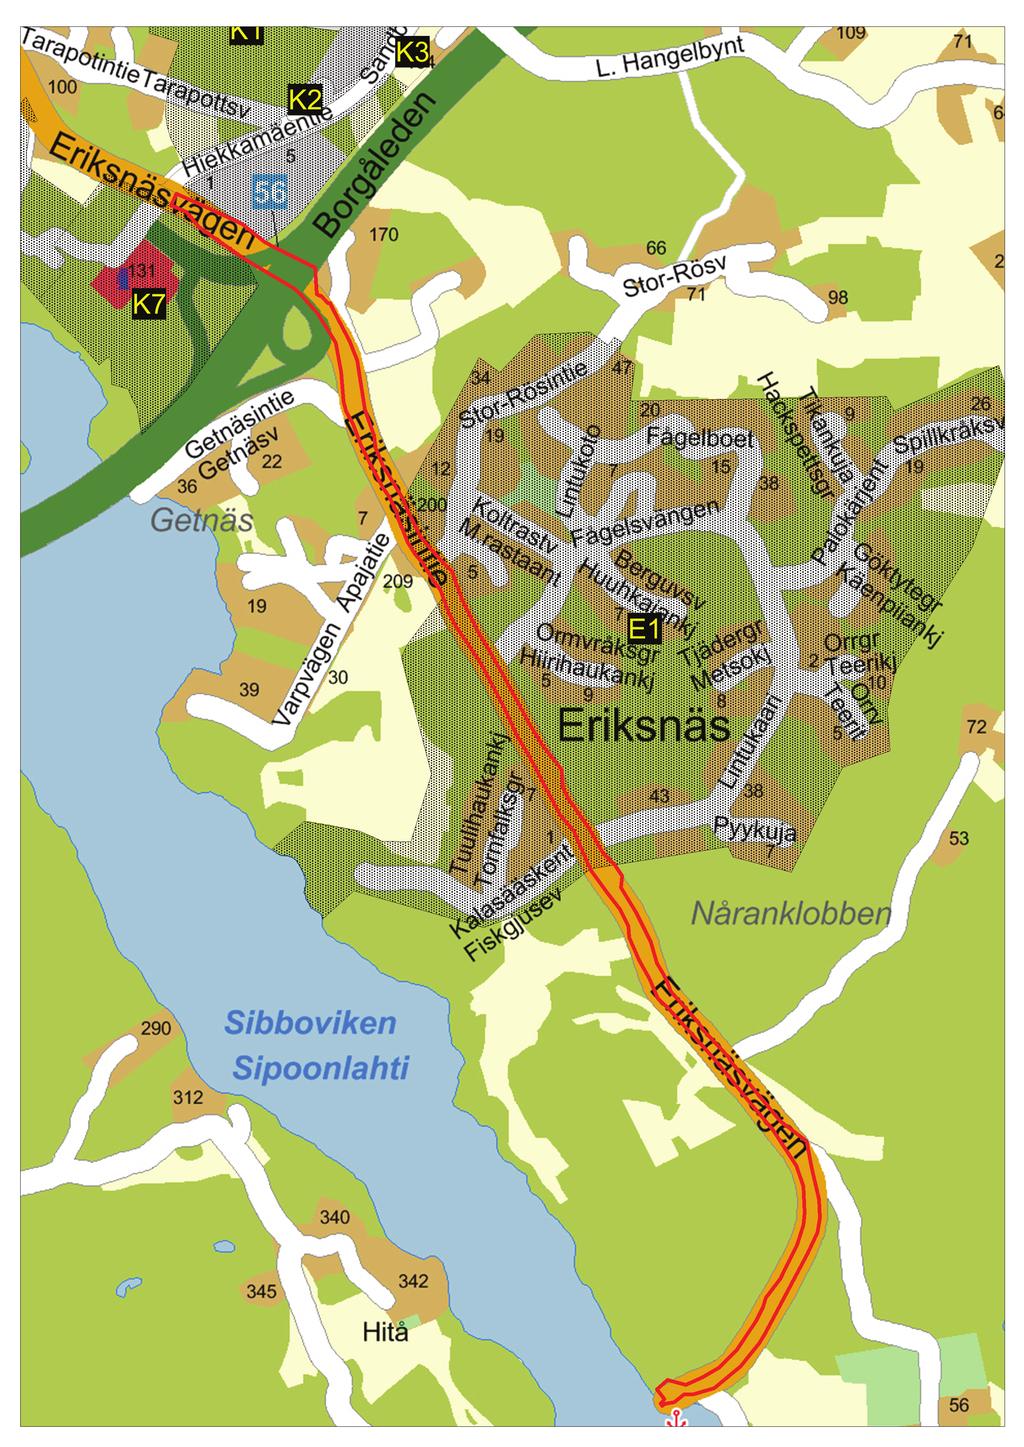 Kaava-alueen sijainti kunnan opaskartalla on merkitty punaisella viivalla.